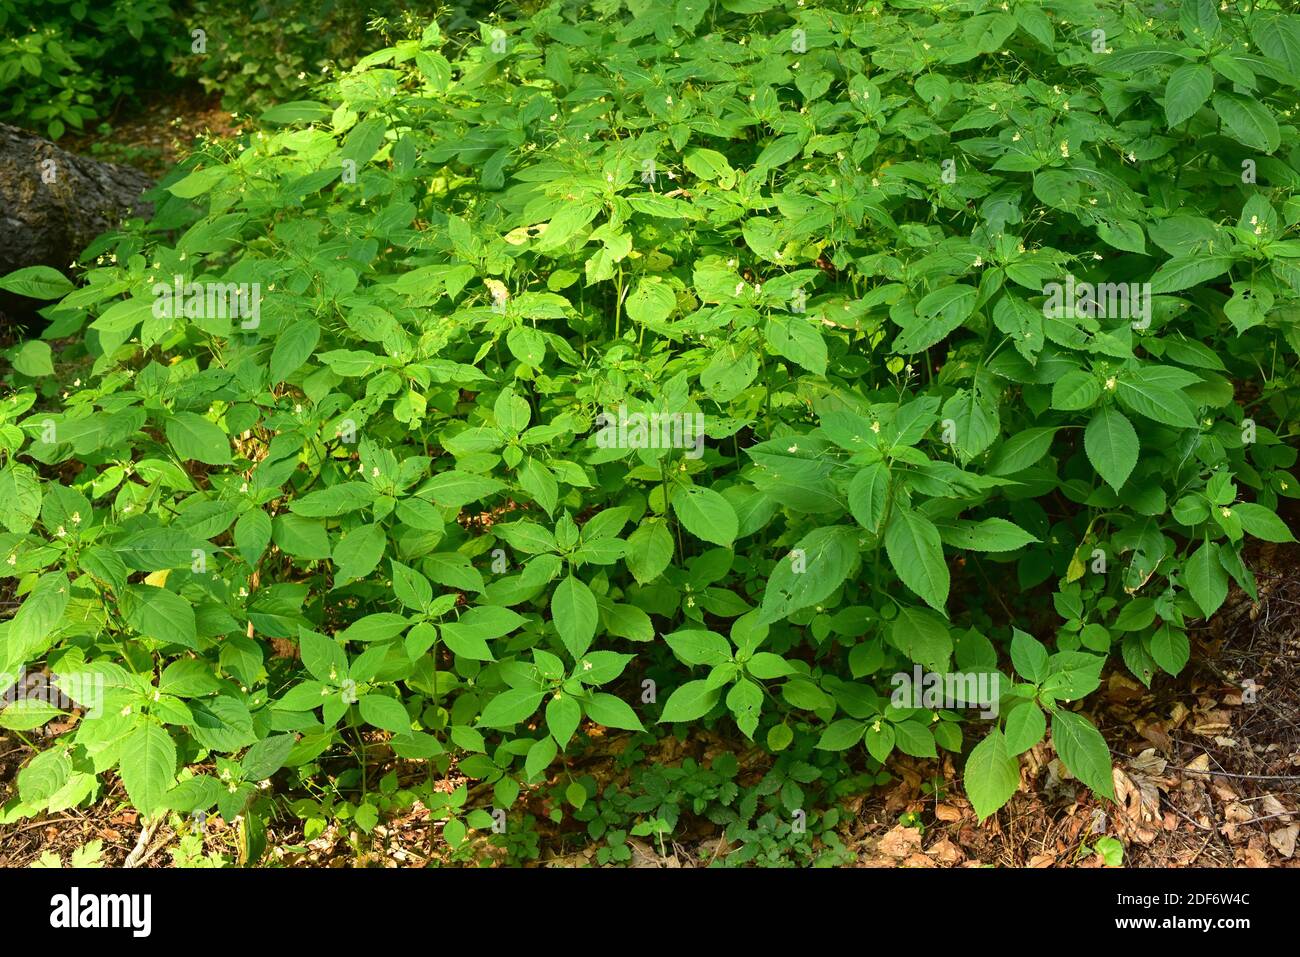 Il balsamo piccolo (Impatiens parviflora) è un'erba annuale originaria dell'Eurasia. Questa foto è stata scattata a Northeim, Germania. Foto Stock